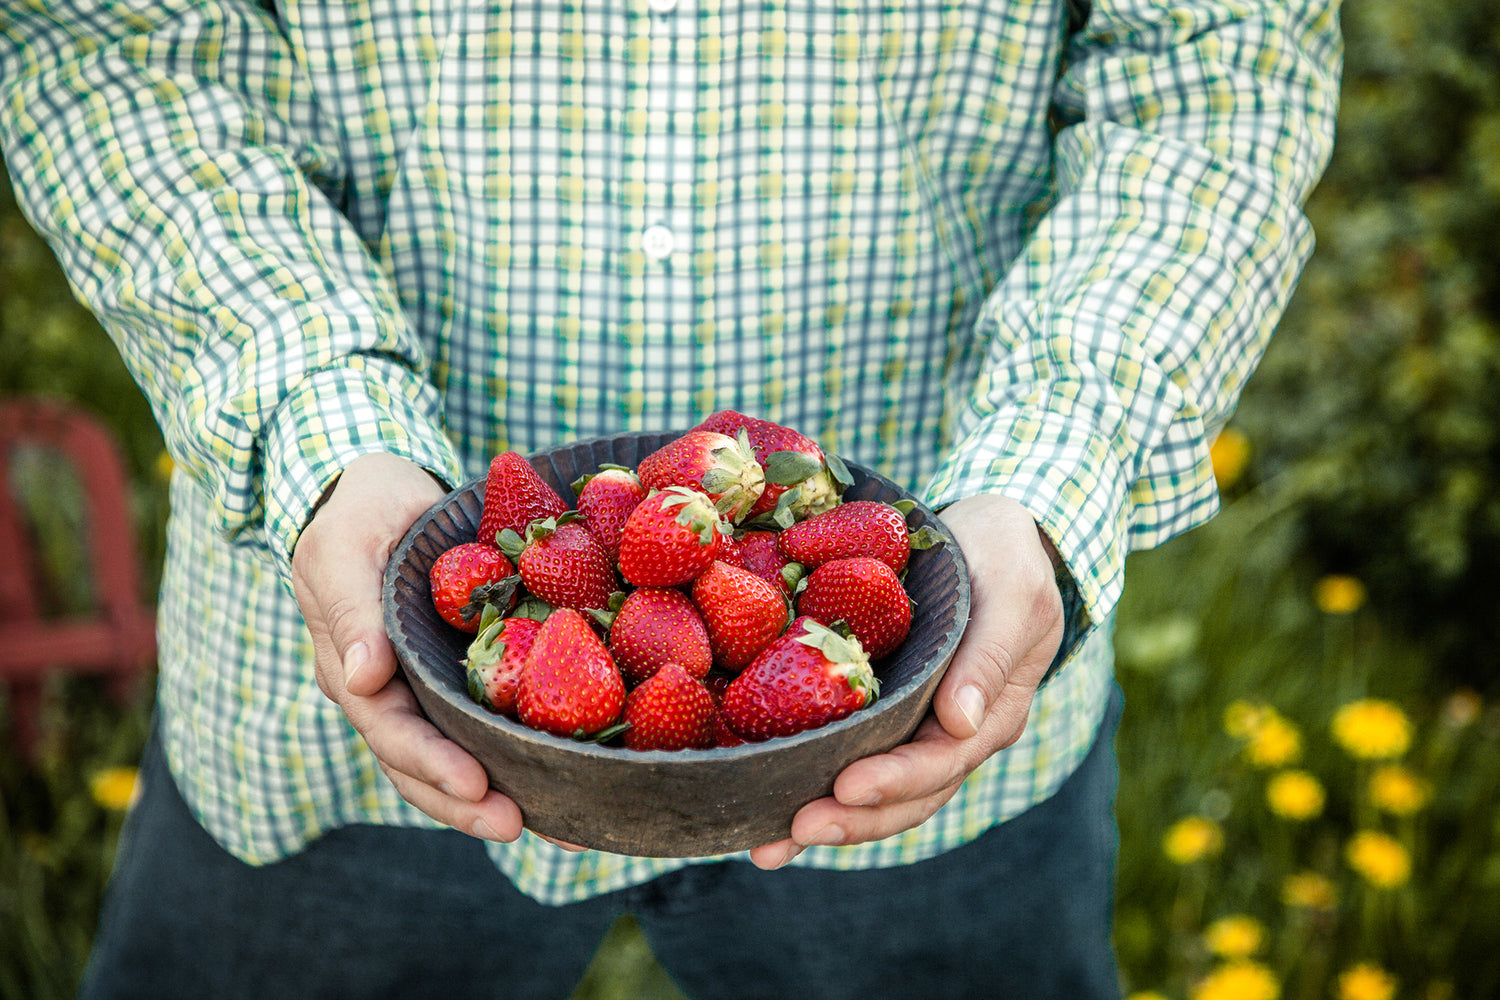 Pluk selv jordbær hos et sted tæt på dig. Flair jordbær er en af de mest populære jordbær. Flair jordbær